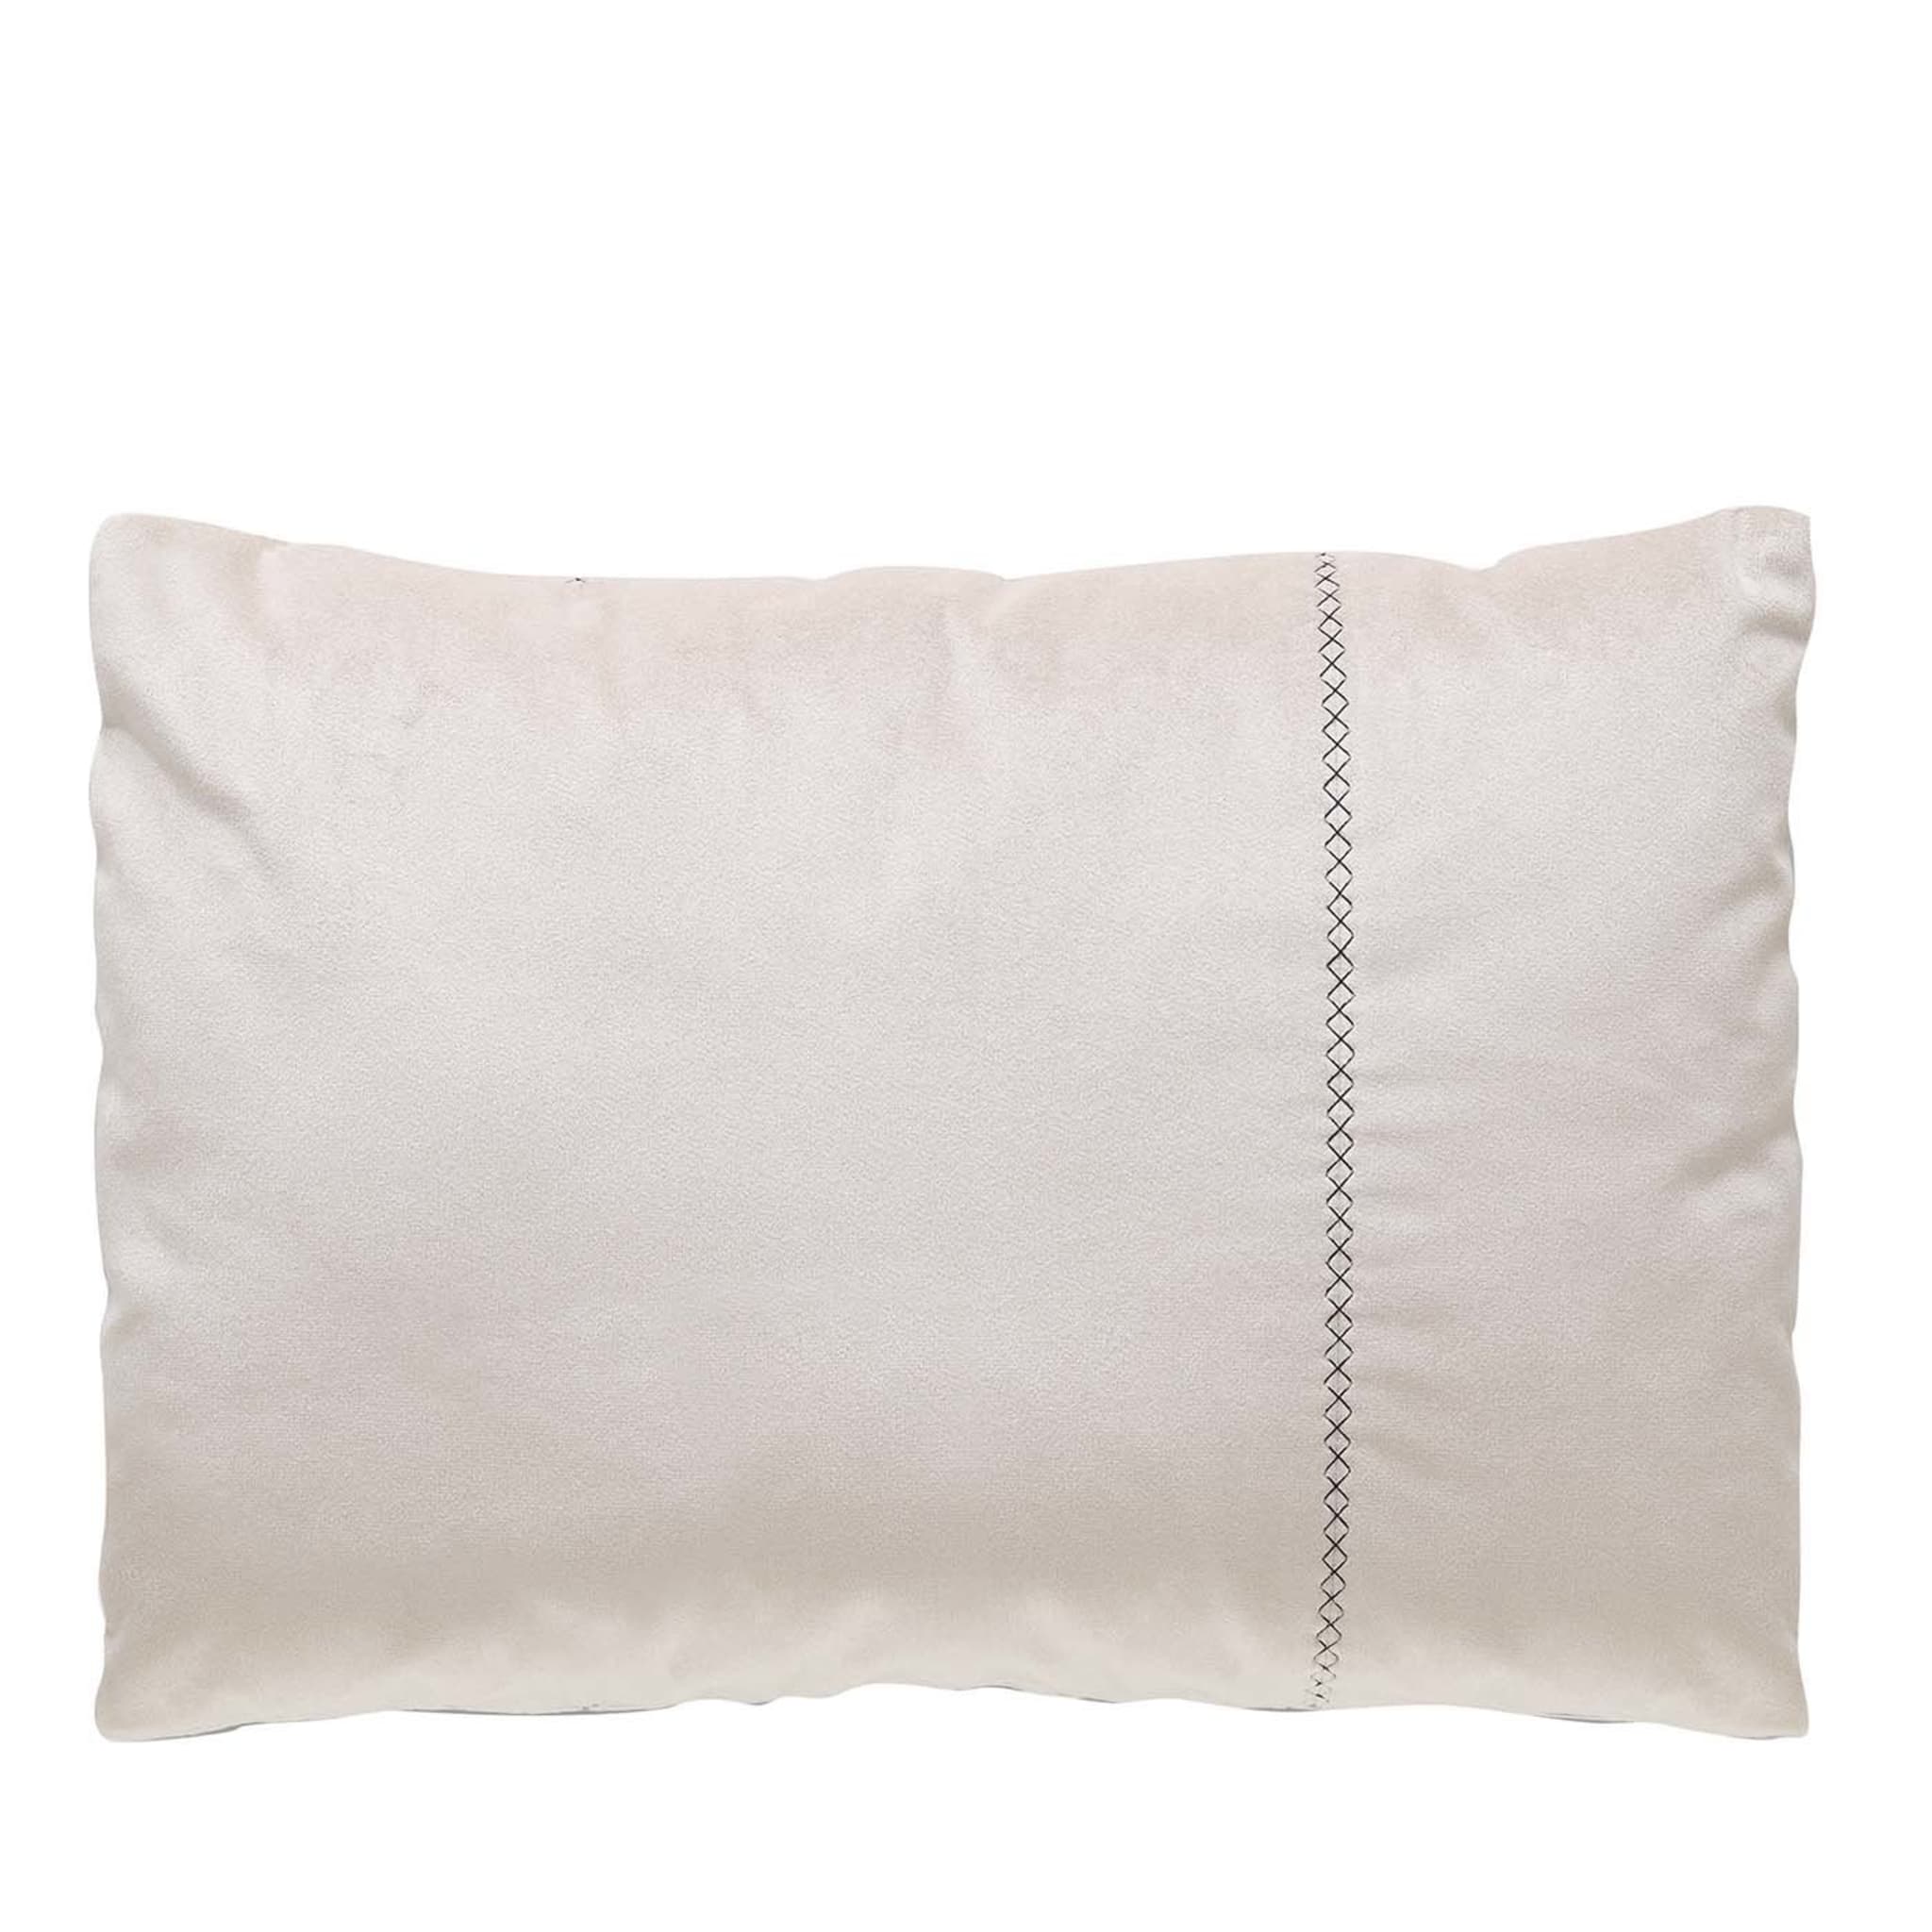 Maury White Rectangular Cushion - Main view